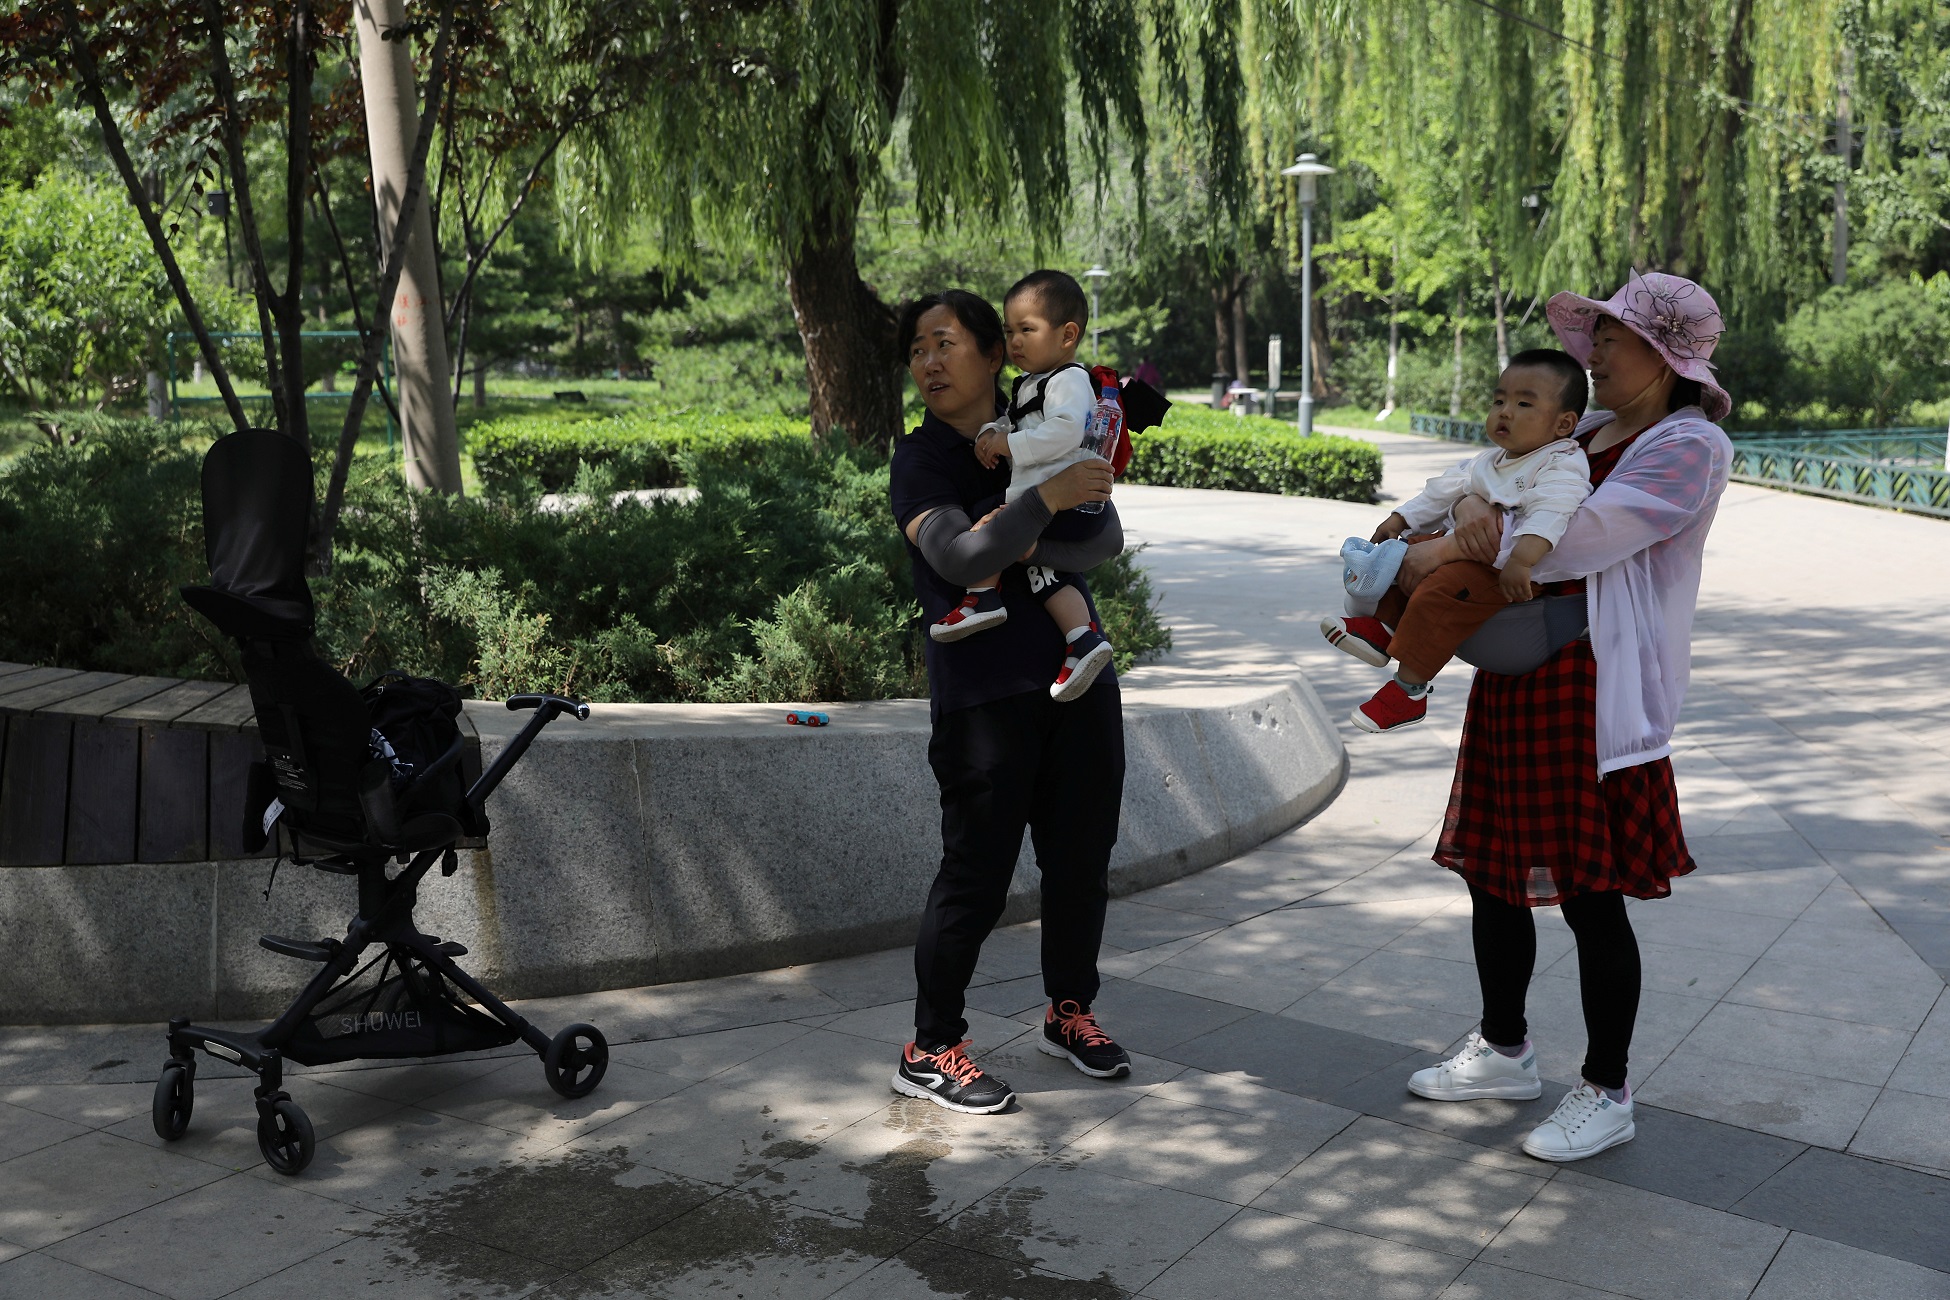 Τρίτο παιδί; όχι ευχαριστώ λέει οι νέοι στην Κίνα